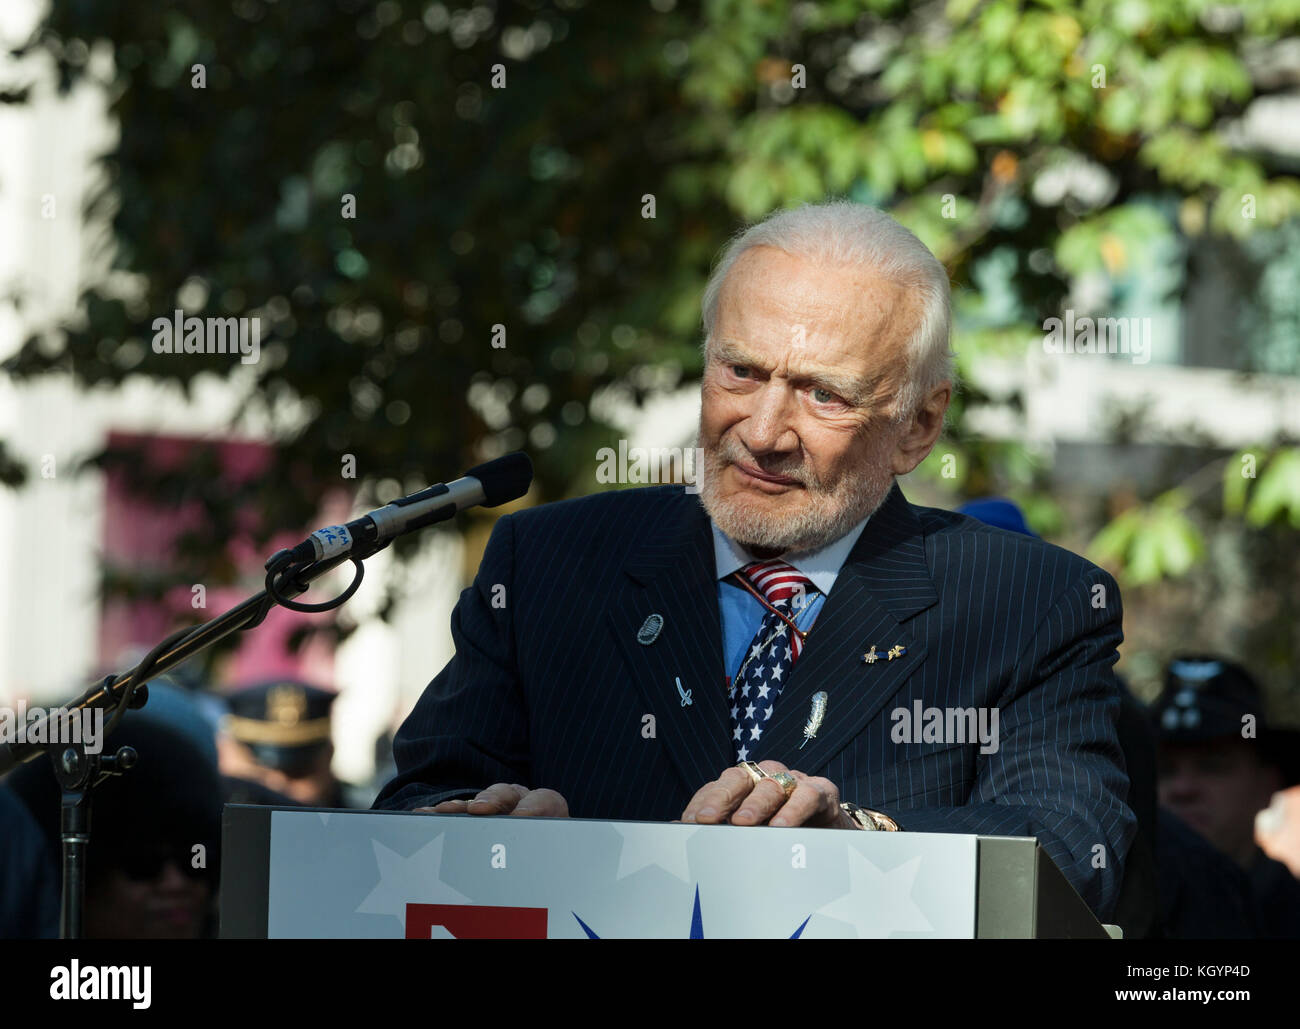 New York, NY - 11 novembre 2017 : l'astronaute de la nasa grand maréchal parle Buzz Aldrin lors d'une cérémonie à new york 99e défilé du jour des anciens combattants annuel sur Madison Square Park Banque D'Images